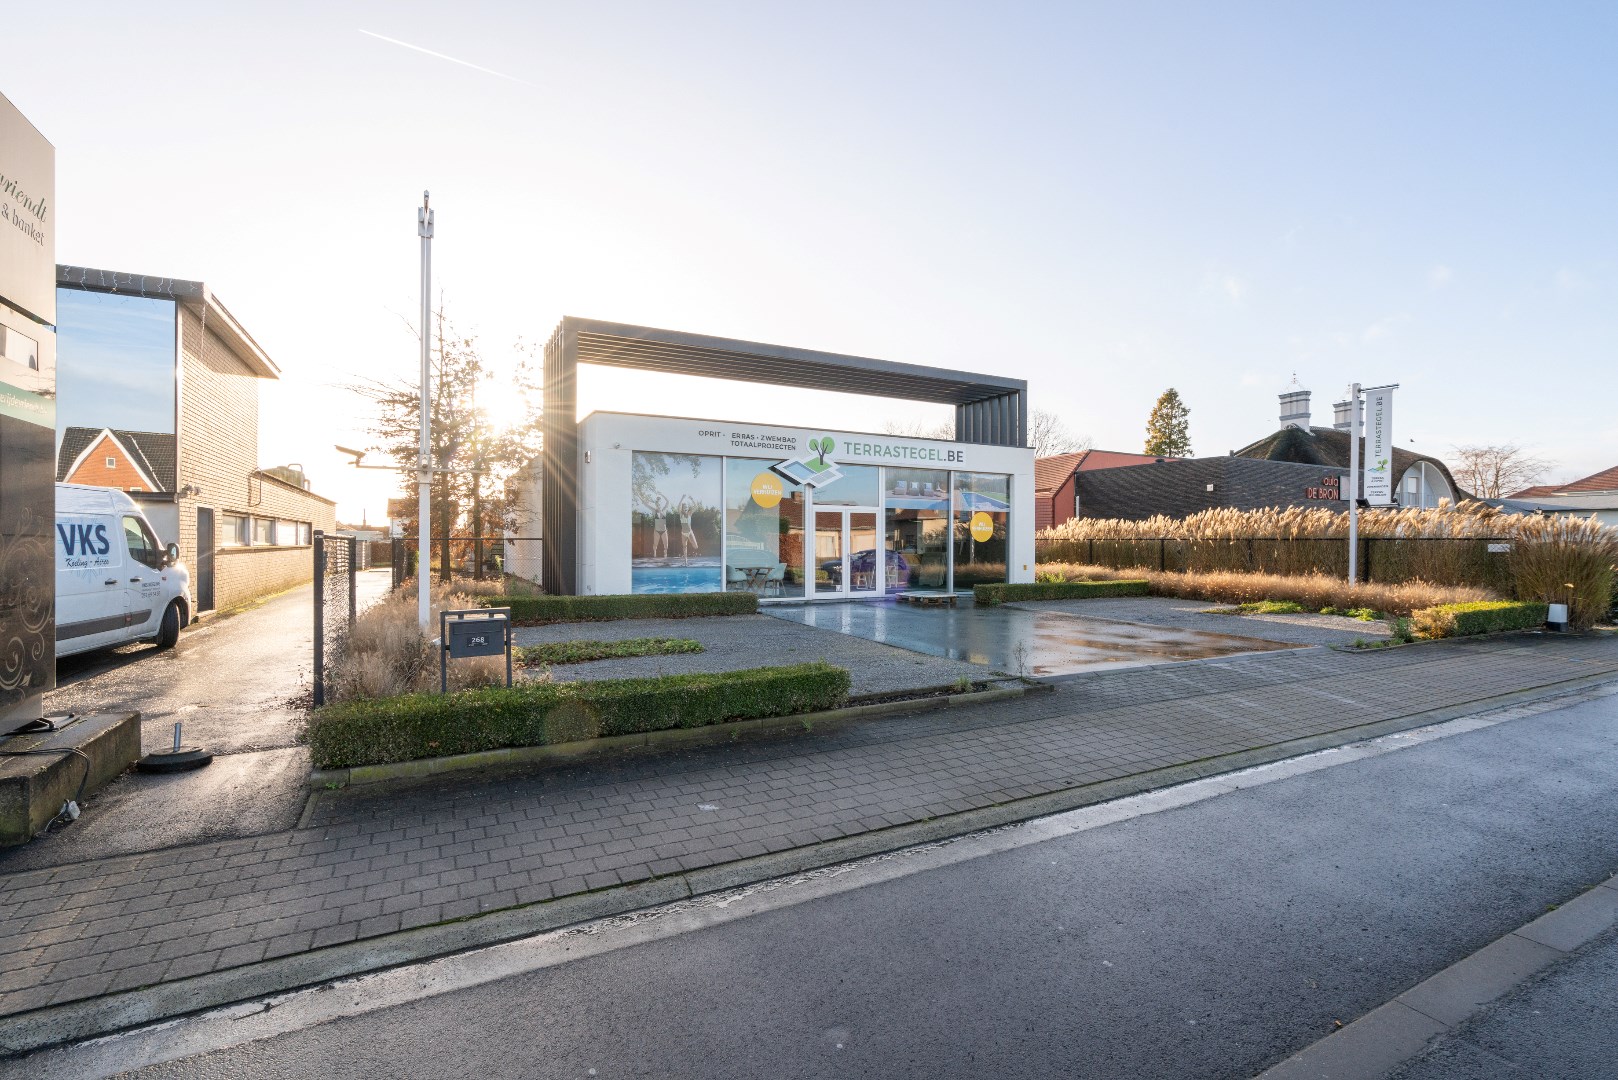 Investeringseigendom: winkelruimte met magazijn en kantoor, Torhout, topligging! 